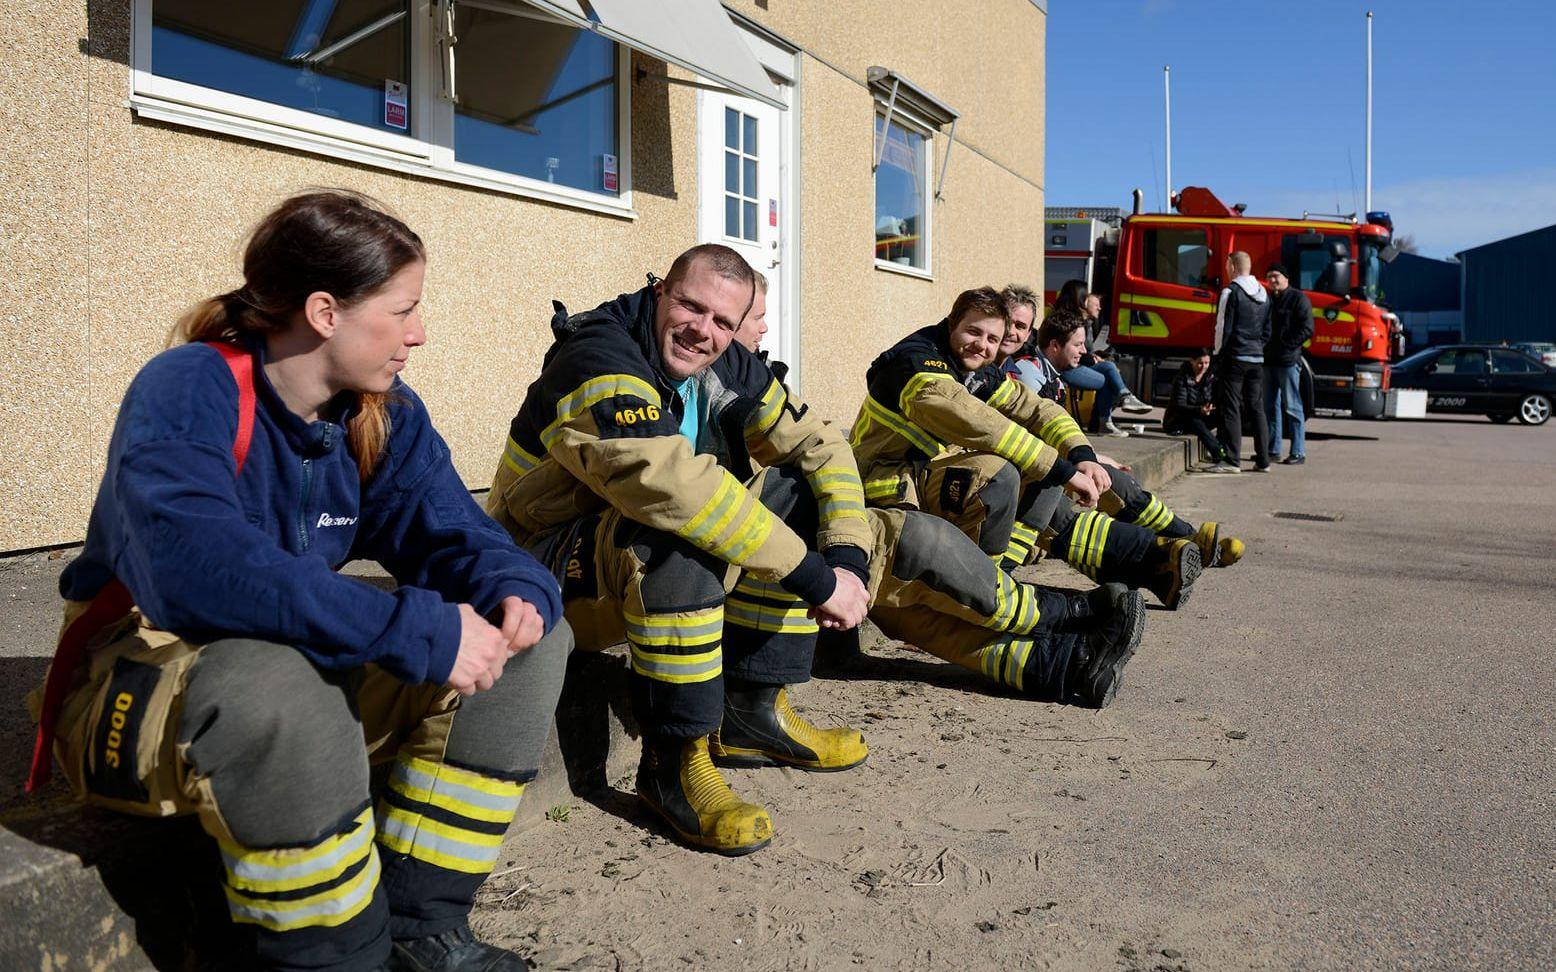 Räddningstjänsten pustar ut efter en hård natt. Brandmän från bland annat Varberg, Veddige och Halmstad har varit här och hjälpt till.